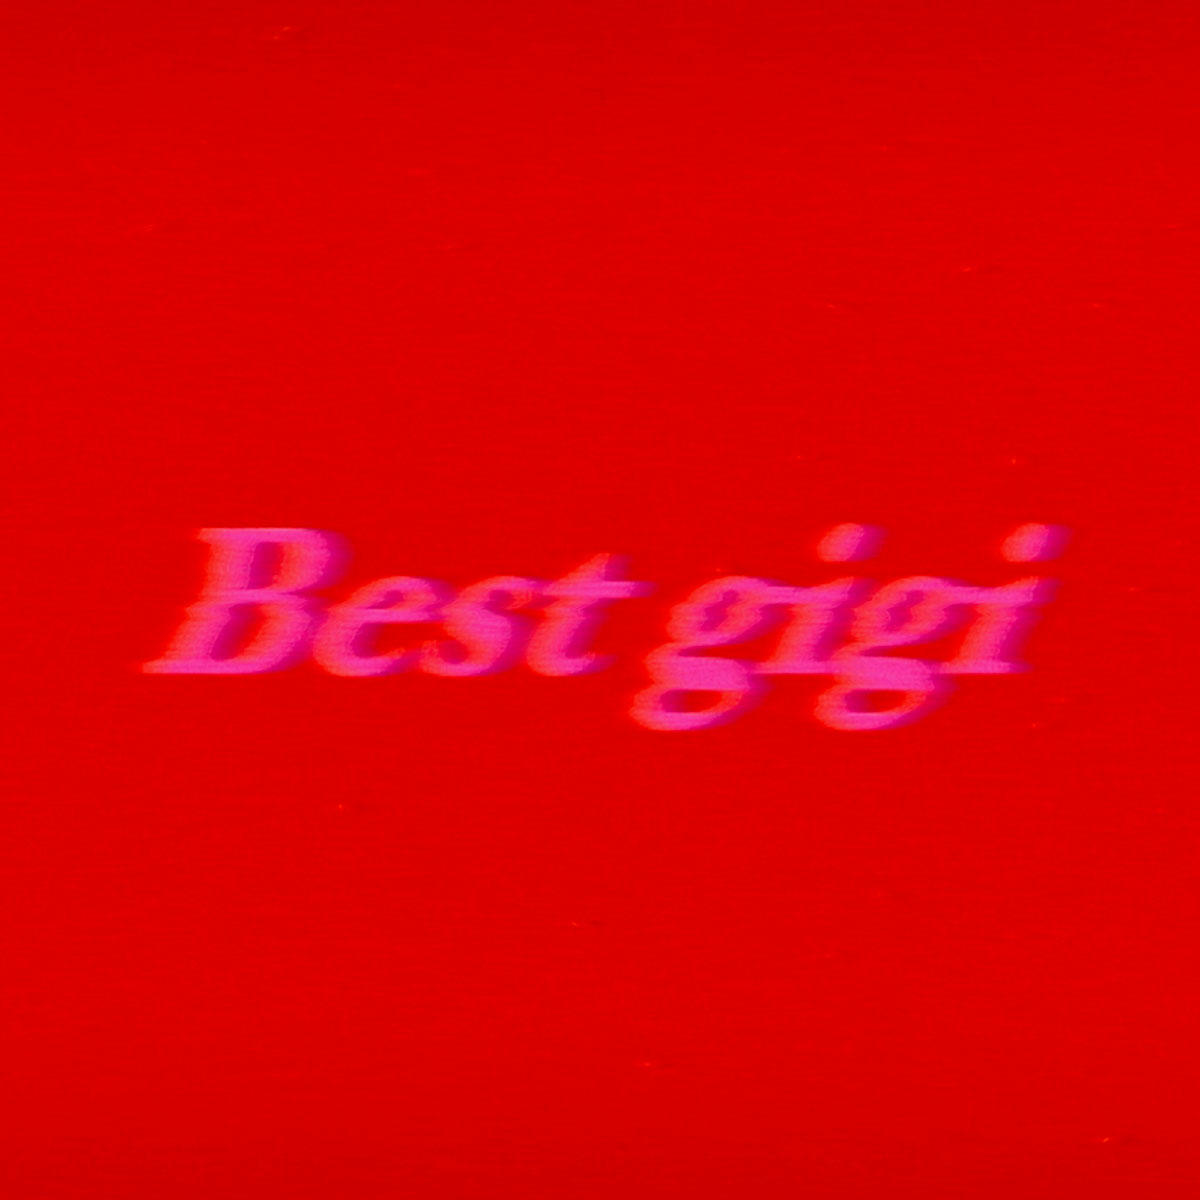 Best-gigi_Best-gigi_jk_20221118.jpg